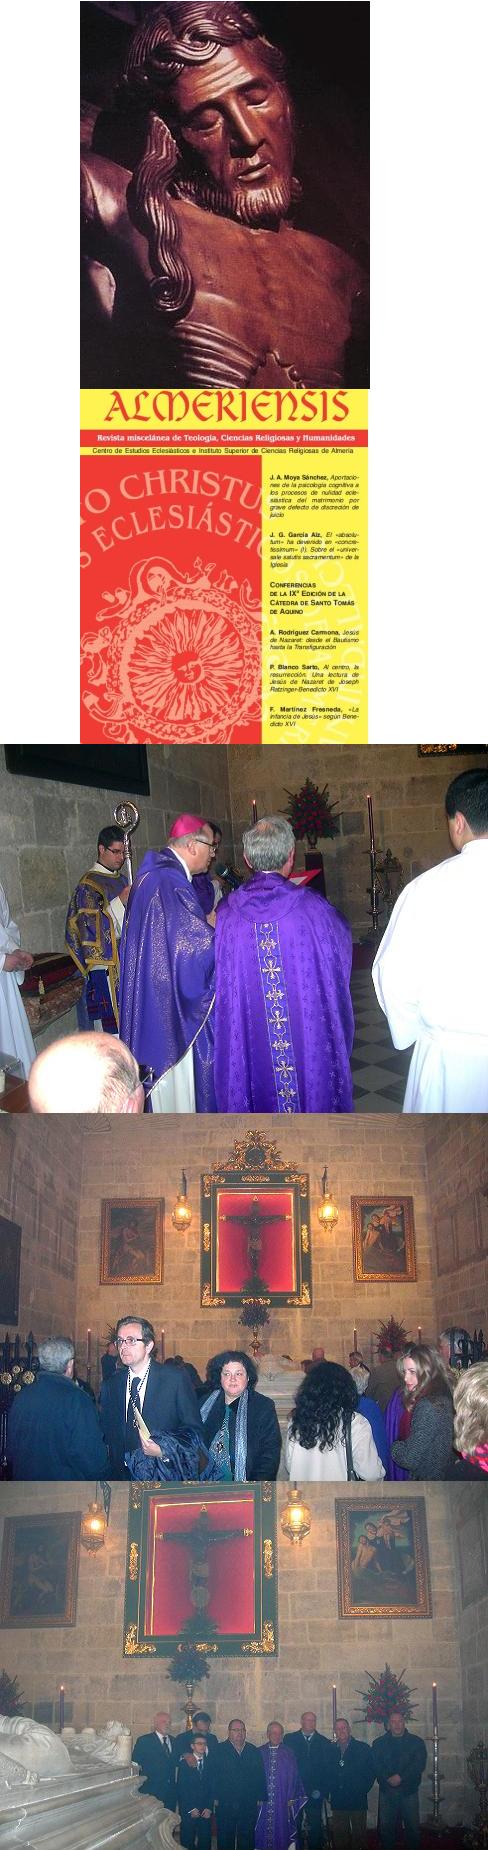 20150221002238-cristo-de-la-escucha-catedral-almeria.jpg